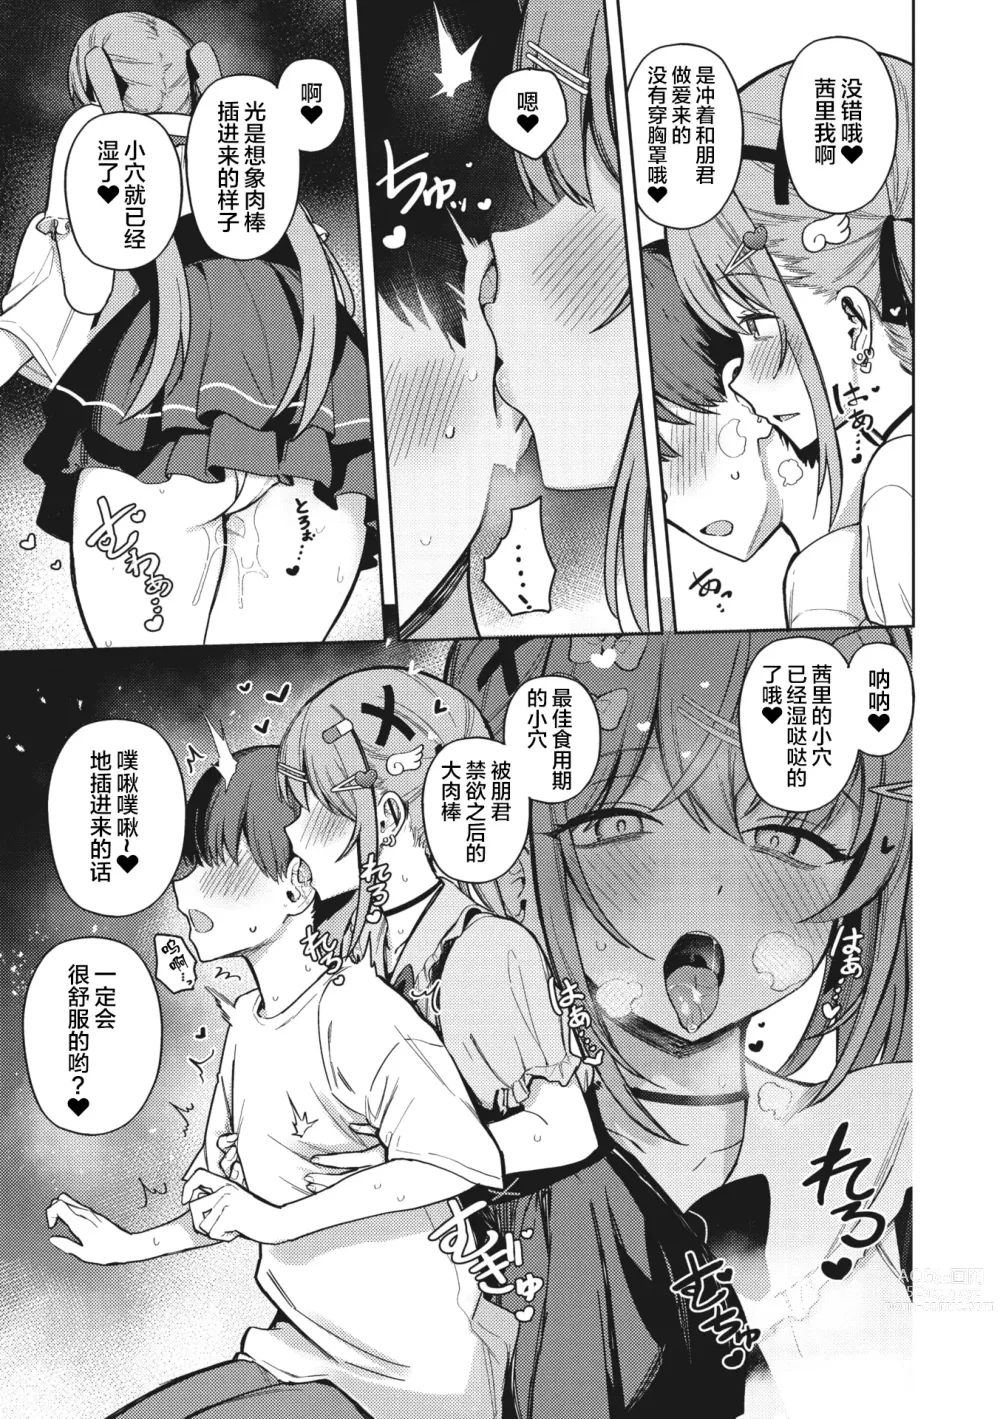 Page 13 of manga Motto! Best Match Mine Girl